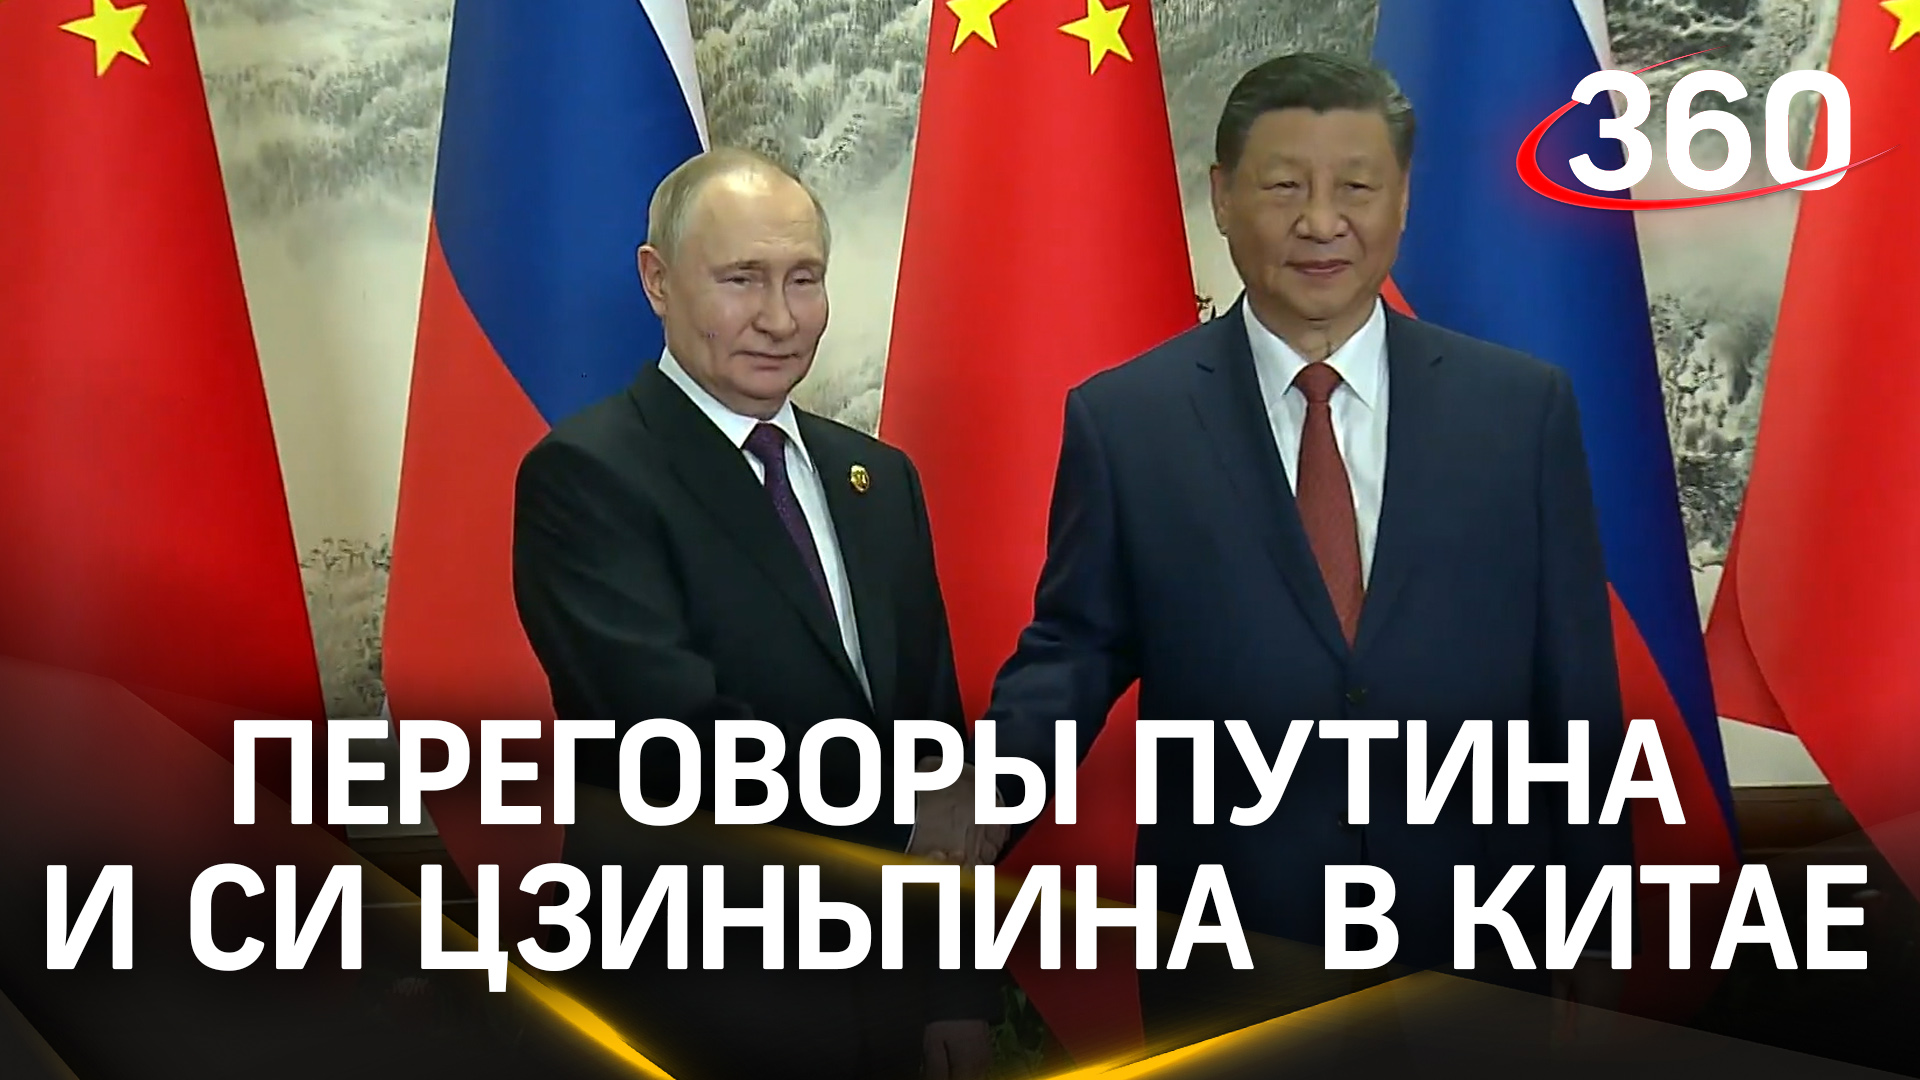 Национальные валюты, товарооборот – Путин и Си Цзиньпин провели переговоры в Китае